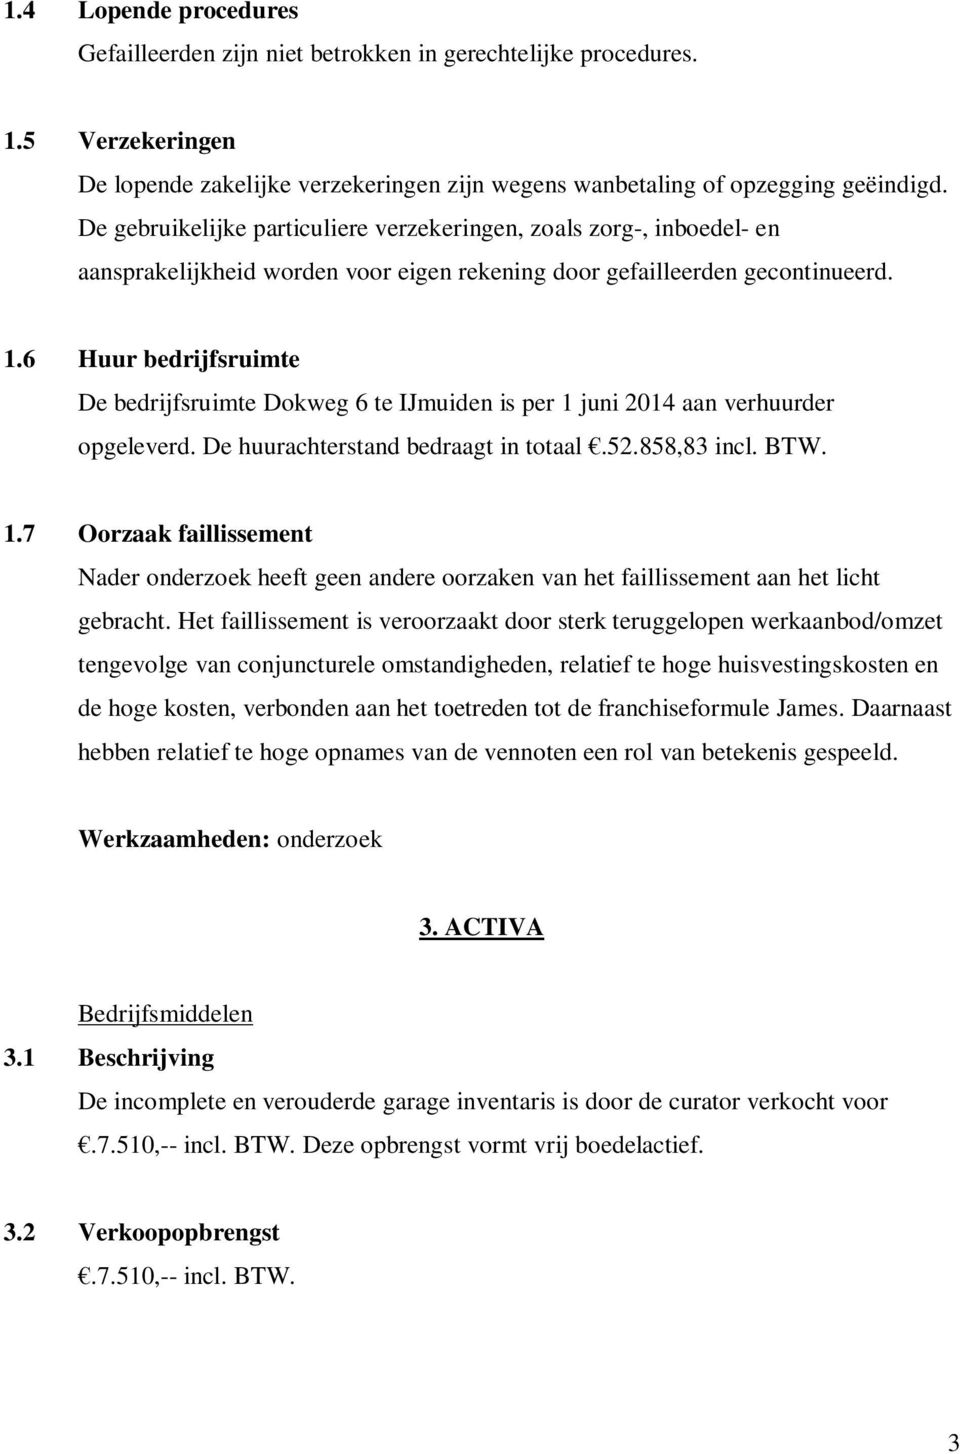 6 Huur bedrijfsruimte De bedrijfsruimte Dokweg 6 te IJmuiden is per 1 juni 2014 aan verhuurder opgeleverd. De huurachterstand bedraagt in totaal.52.858,83 incl. BTW. 1.7 Oorzaak faillissement Nader onderzoek heeft geen andere oorzaken van het faillissement aan het licht gebracht.